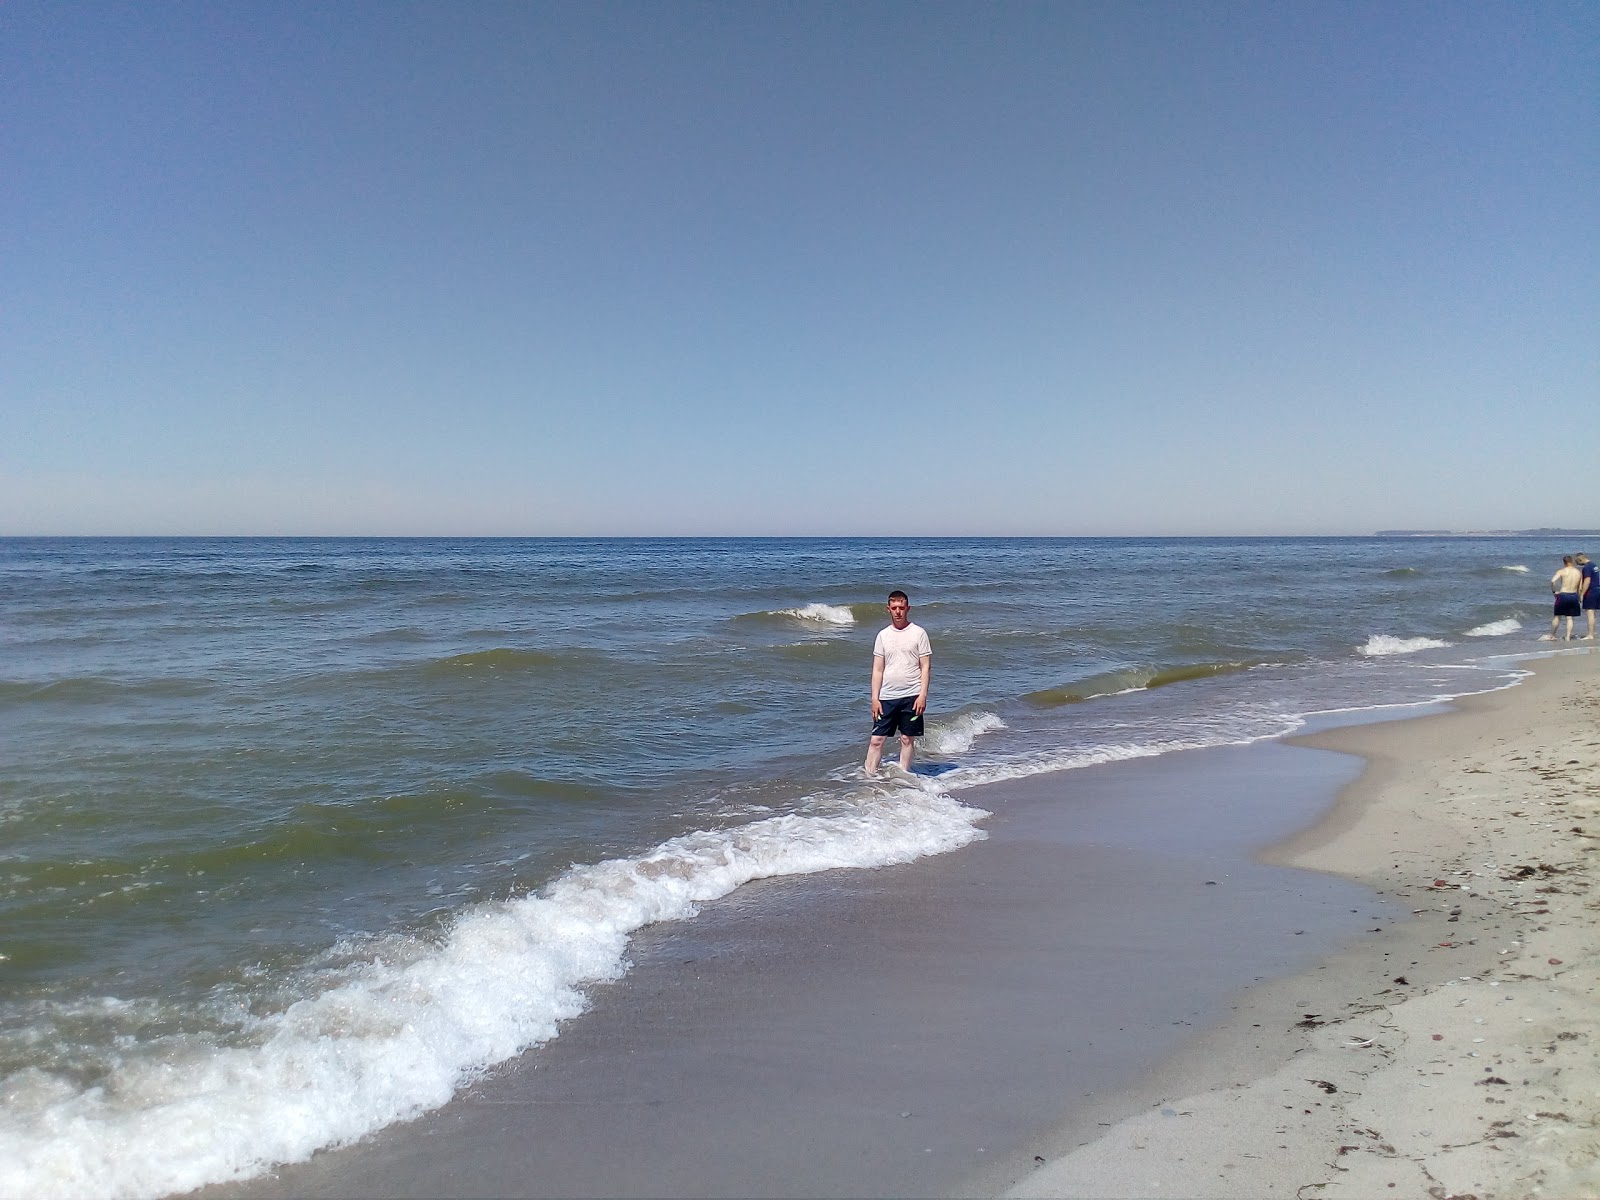 Foto von Khmelevka beach mit langer gerader strand